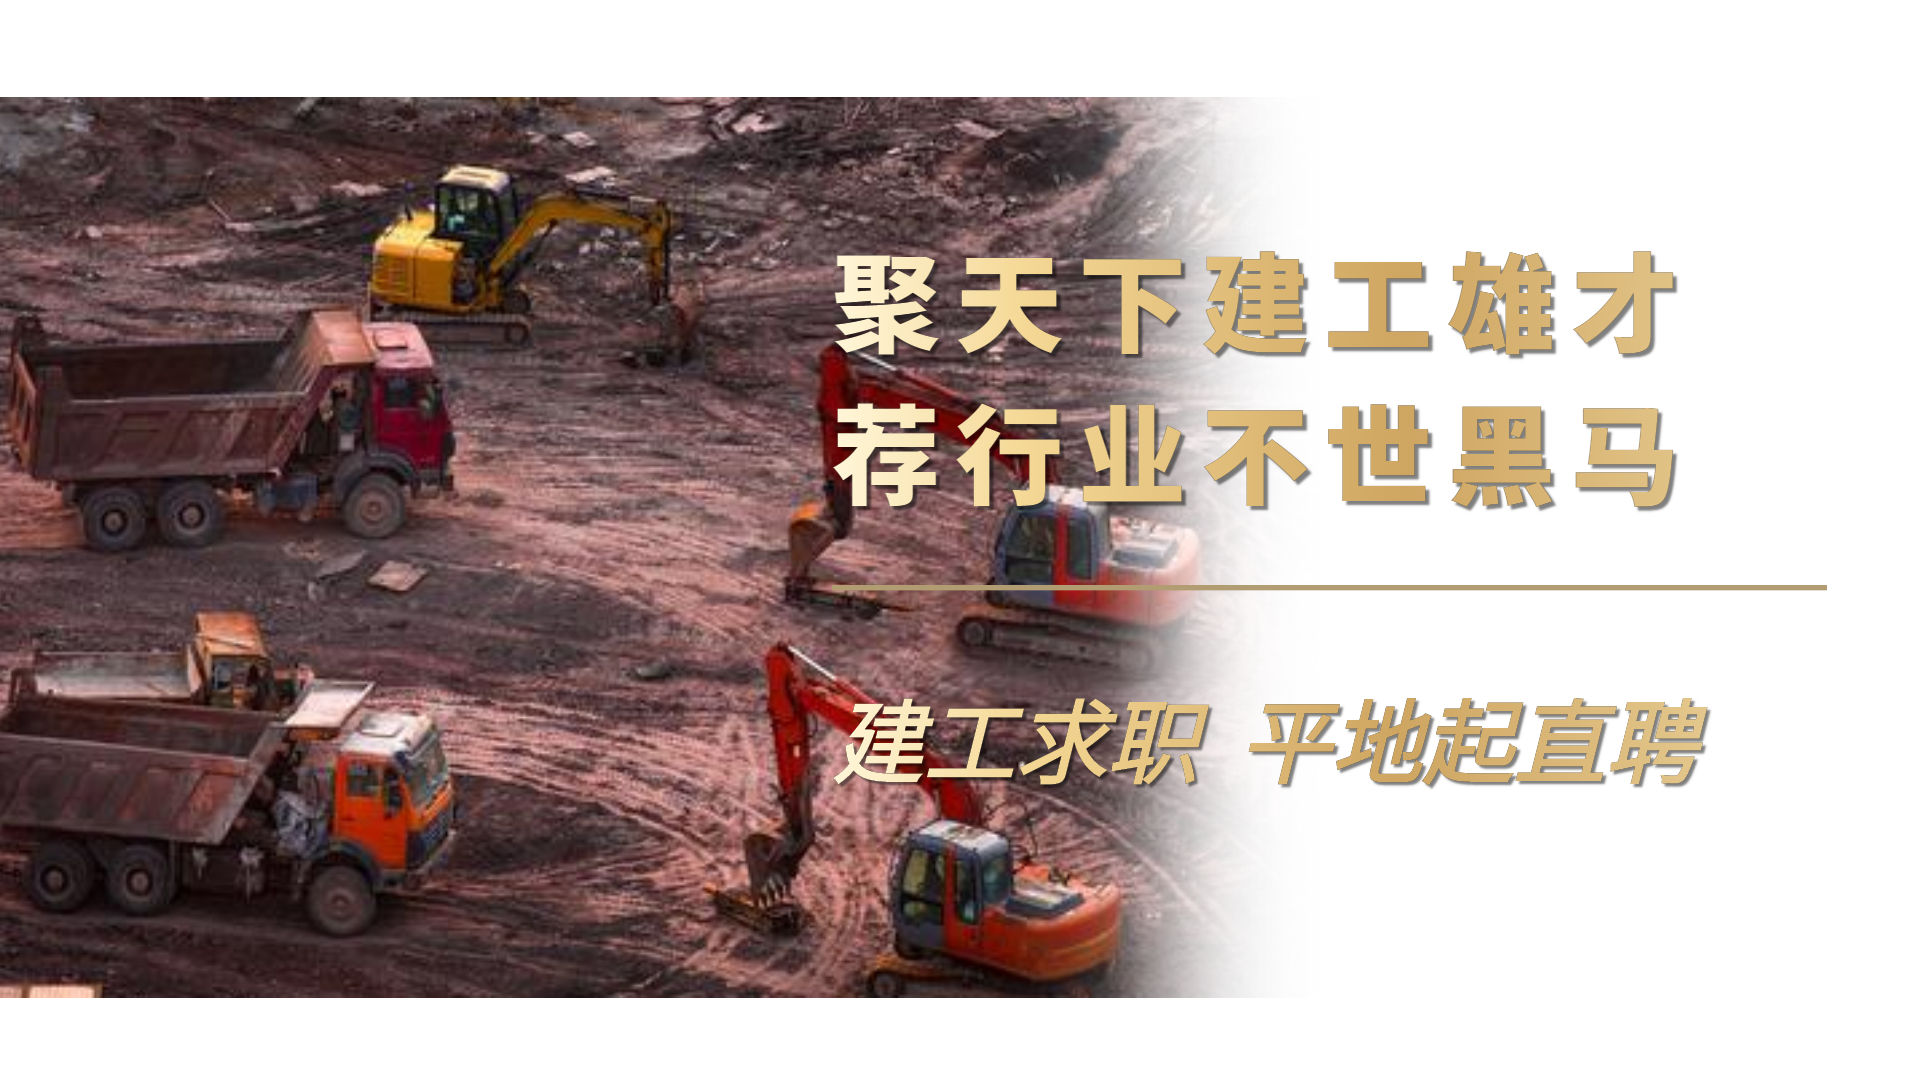 就等你了！国企直聘！！！海南省建设集团有限公司招聘55人